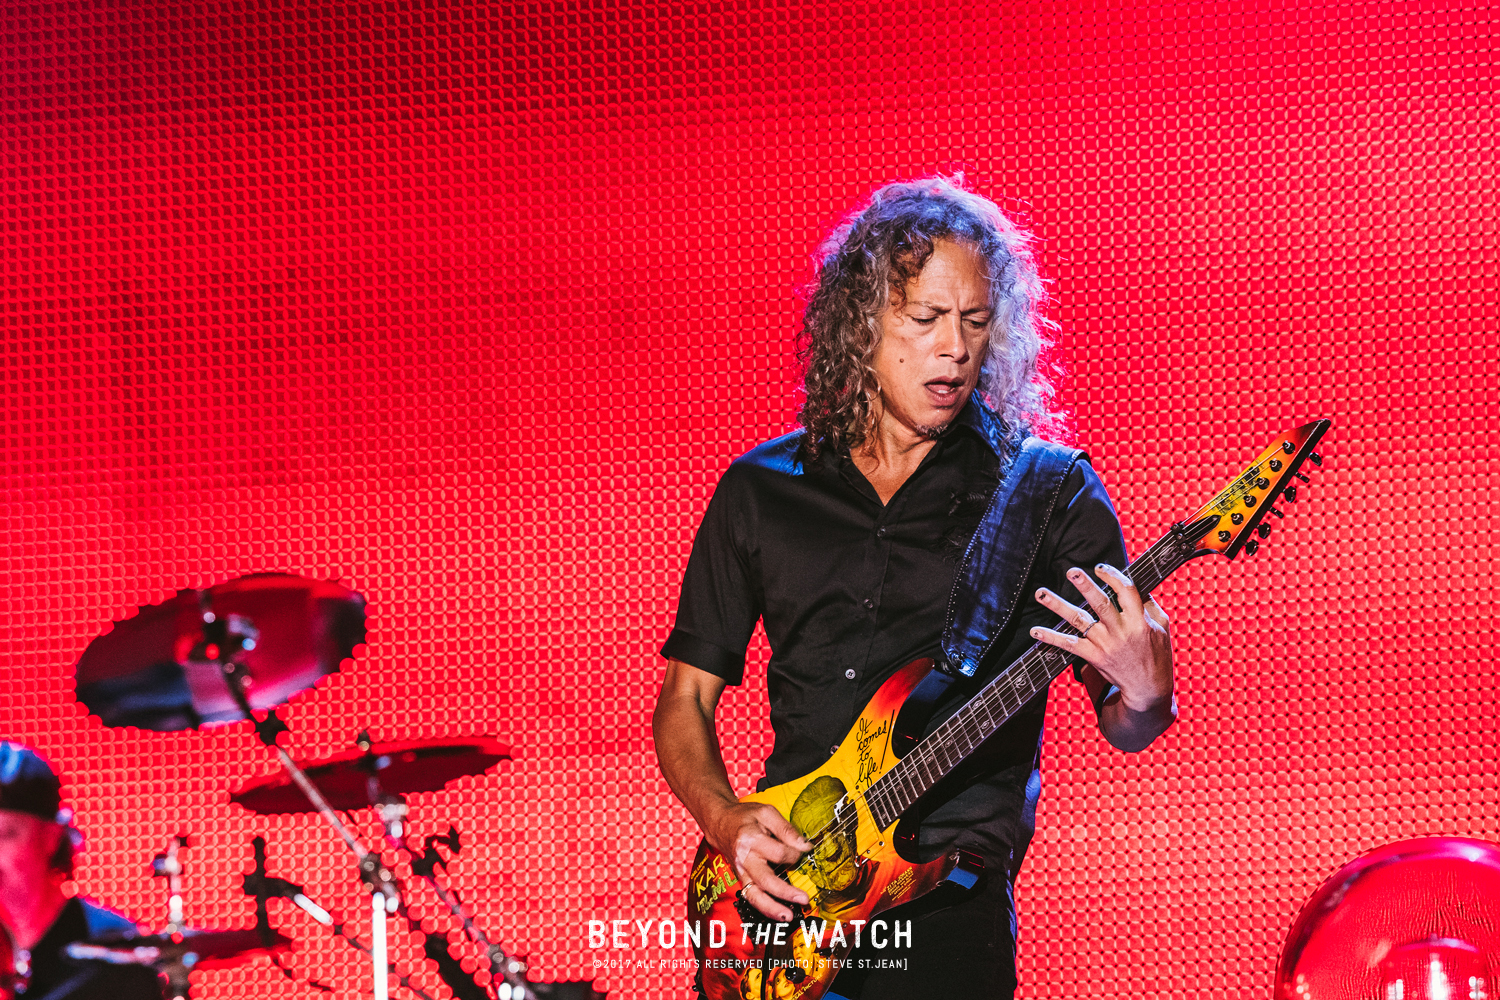  Kirk Hammett was unbelievable as per usual. 